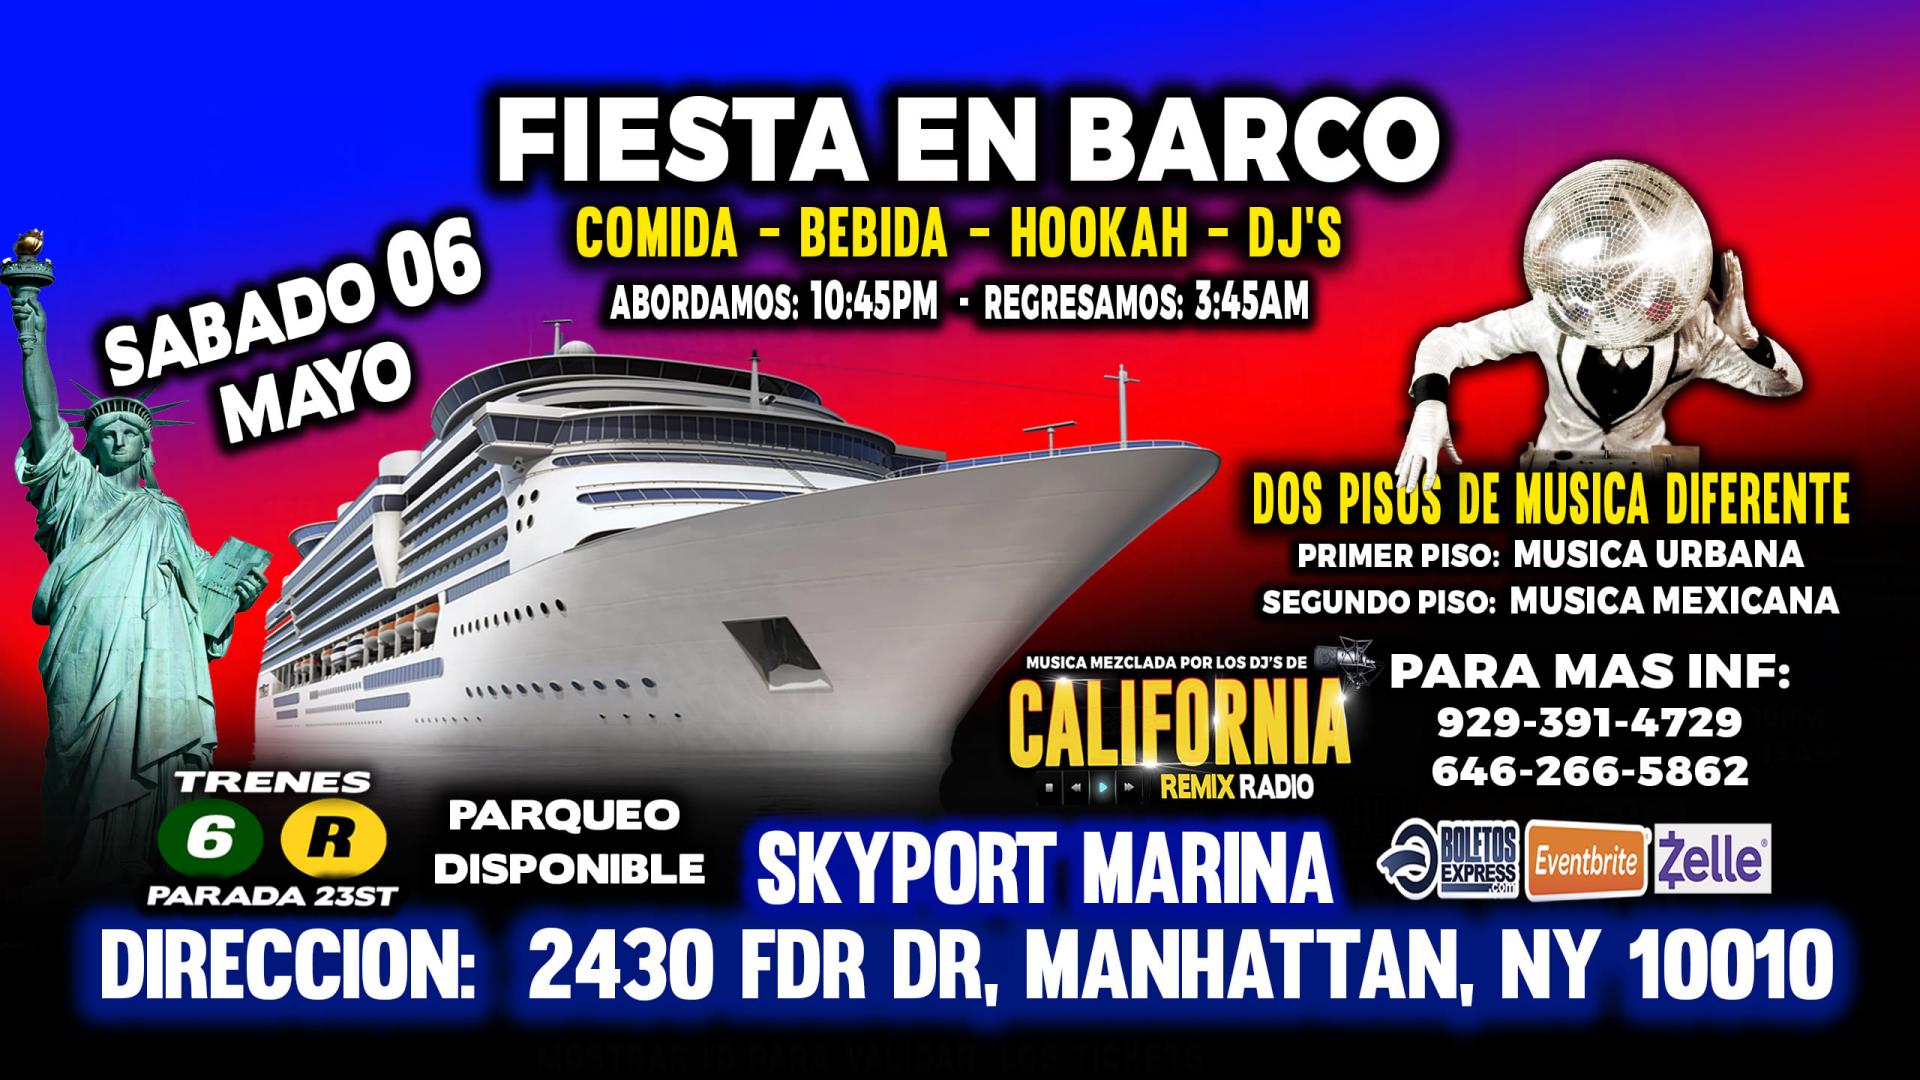 Fiesta En Barco + Agrupaciones + Radio Djs + Dos Pisos De Musica Diferente